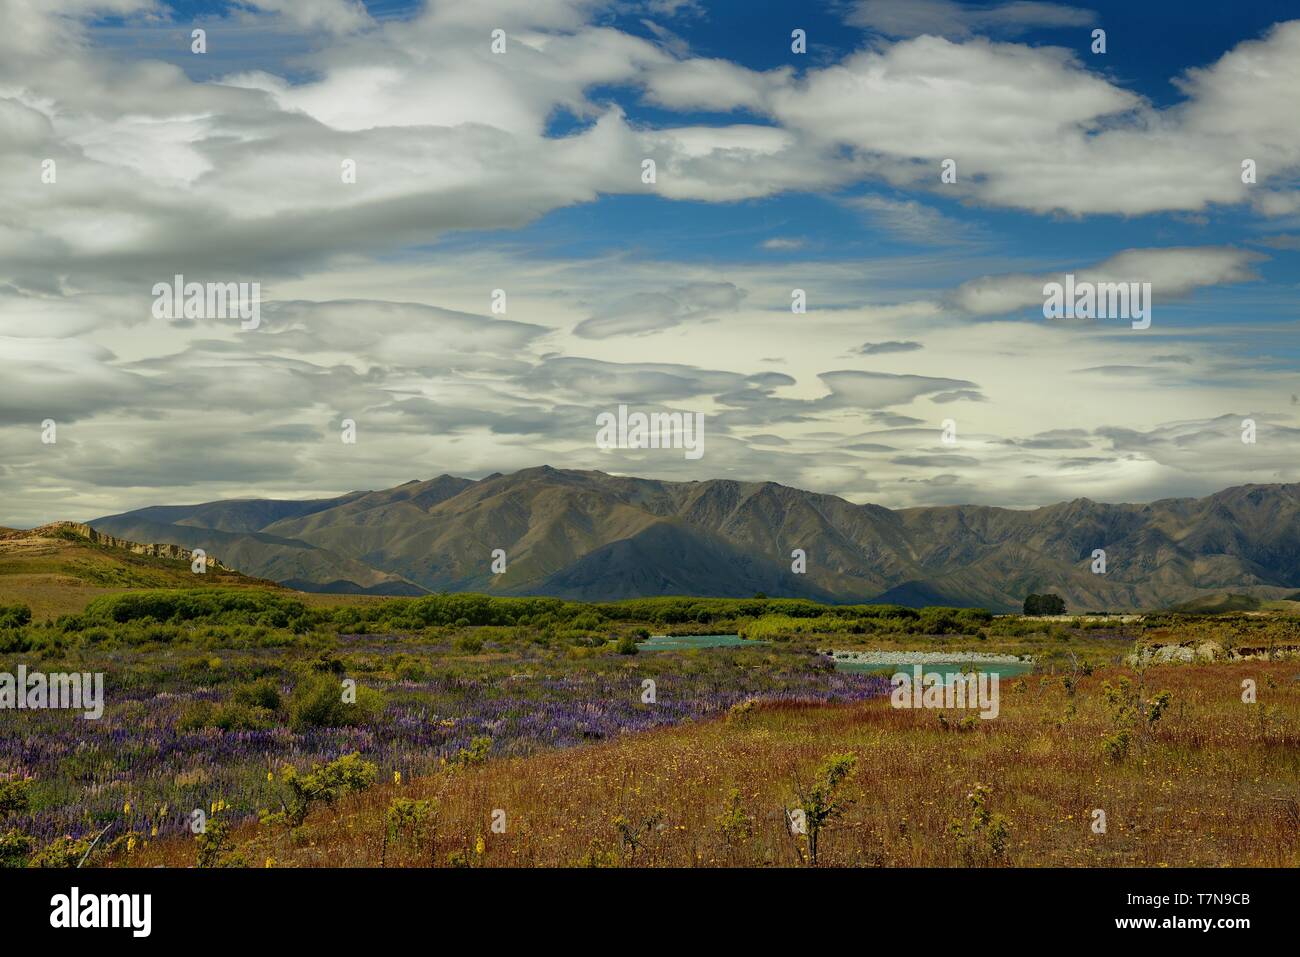 Il paesaggio della Nuova Zelanda - Isola del Sud - Paesaggio vicino a sud delle Alpi - strada tra le montagne e il cielo blu con nuvole e acqua Foto Stock